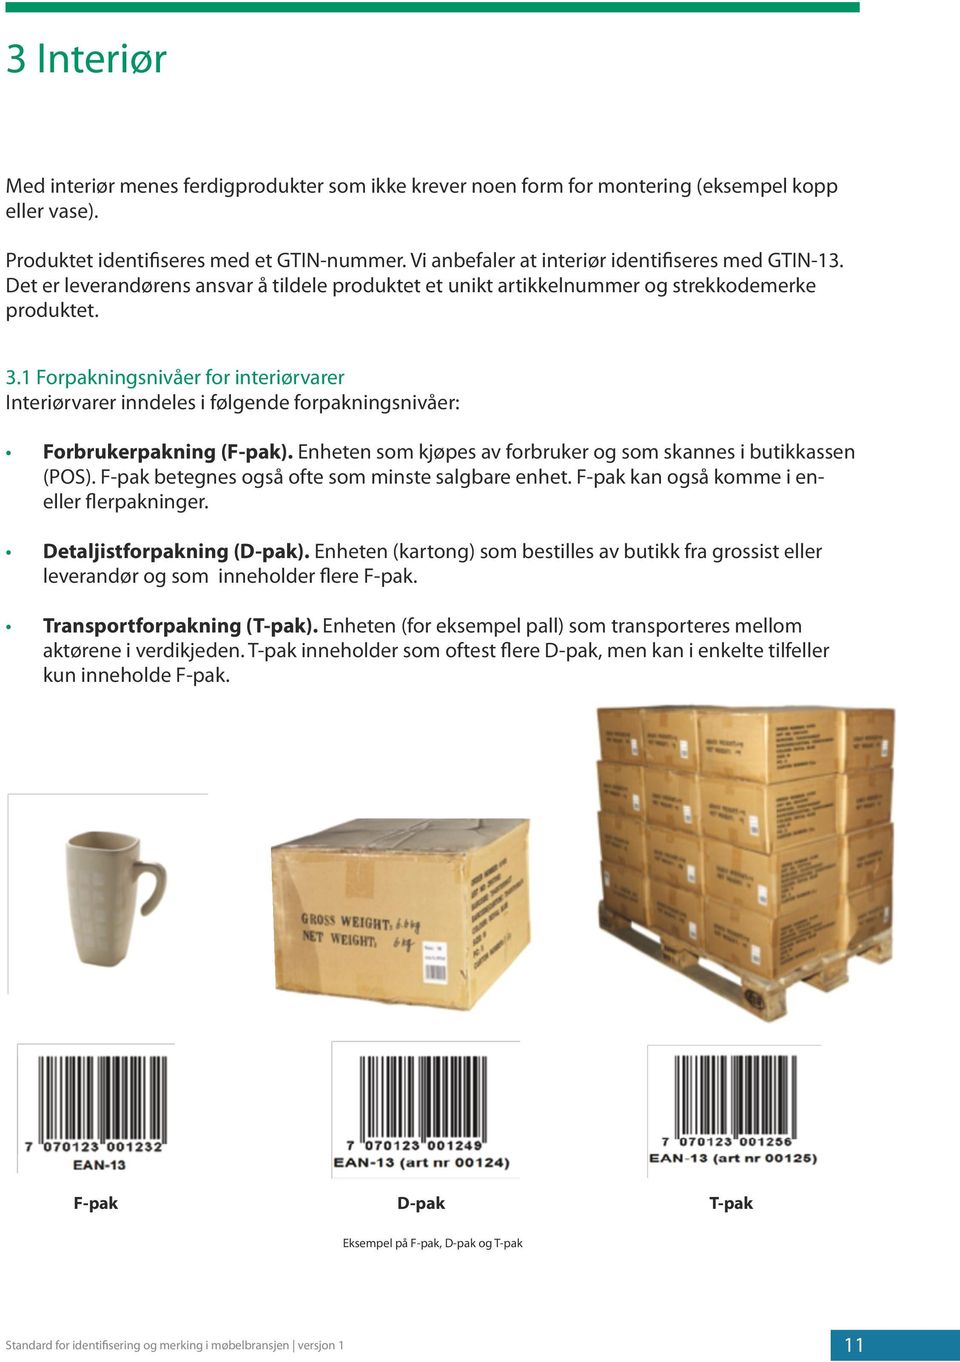 1 Forpakningsnivåer for interiørvarer Interiørvarer inndeles i følgende forpakningsnivåer: Forbrukerpakning (F-pak). Enheten som kjøpes av forbruker og som skannes i butikkassen (POS).